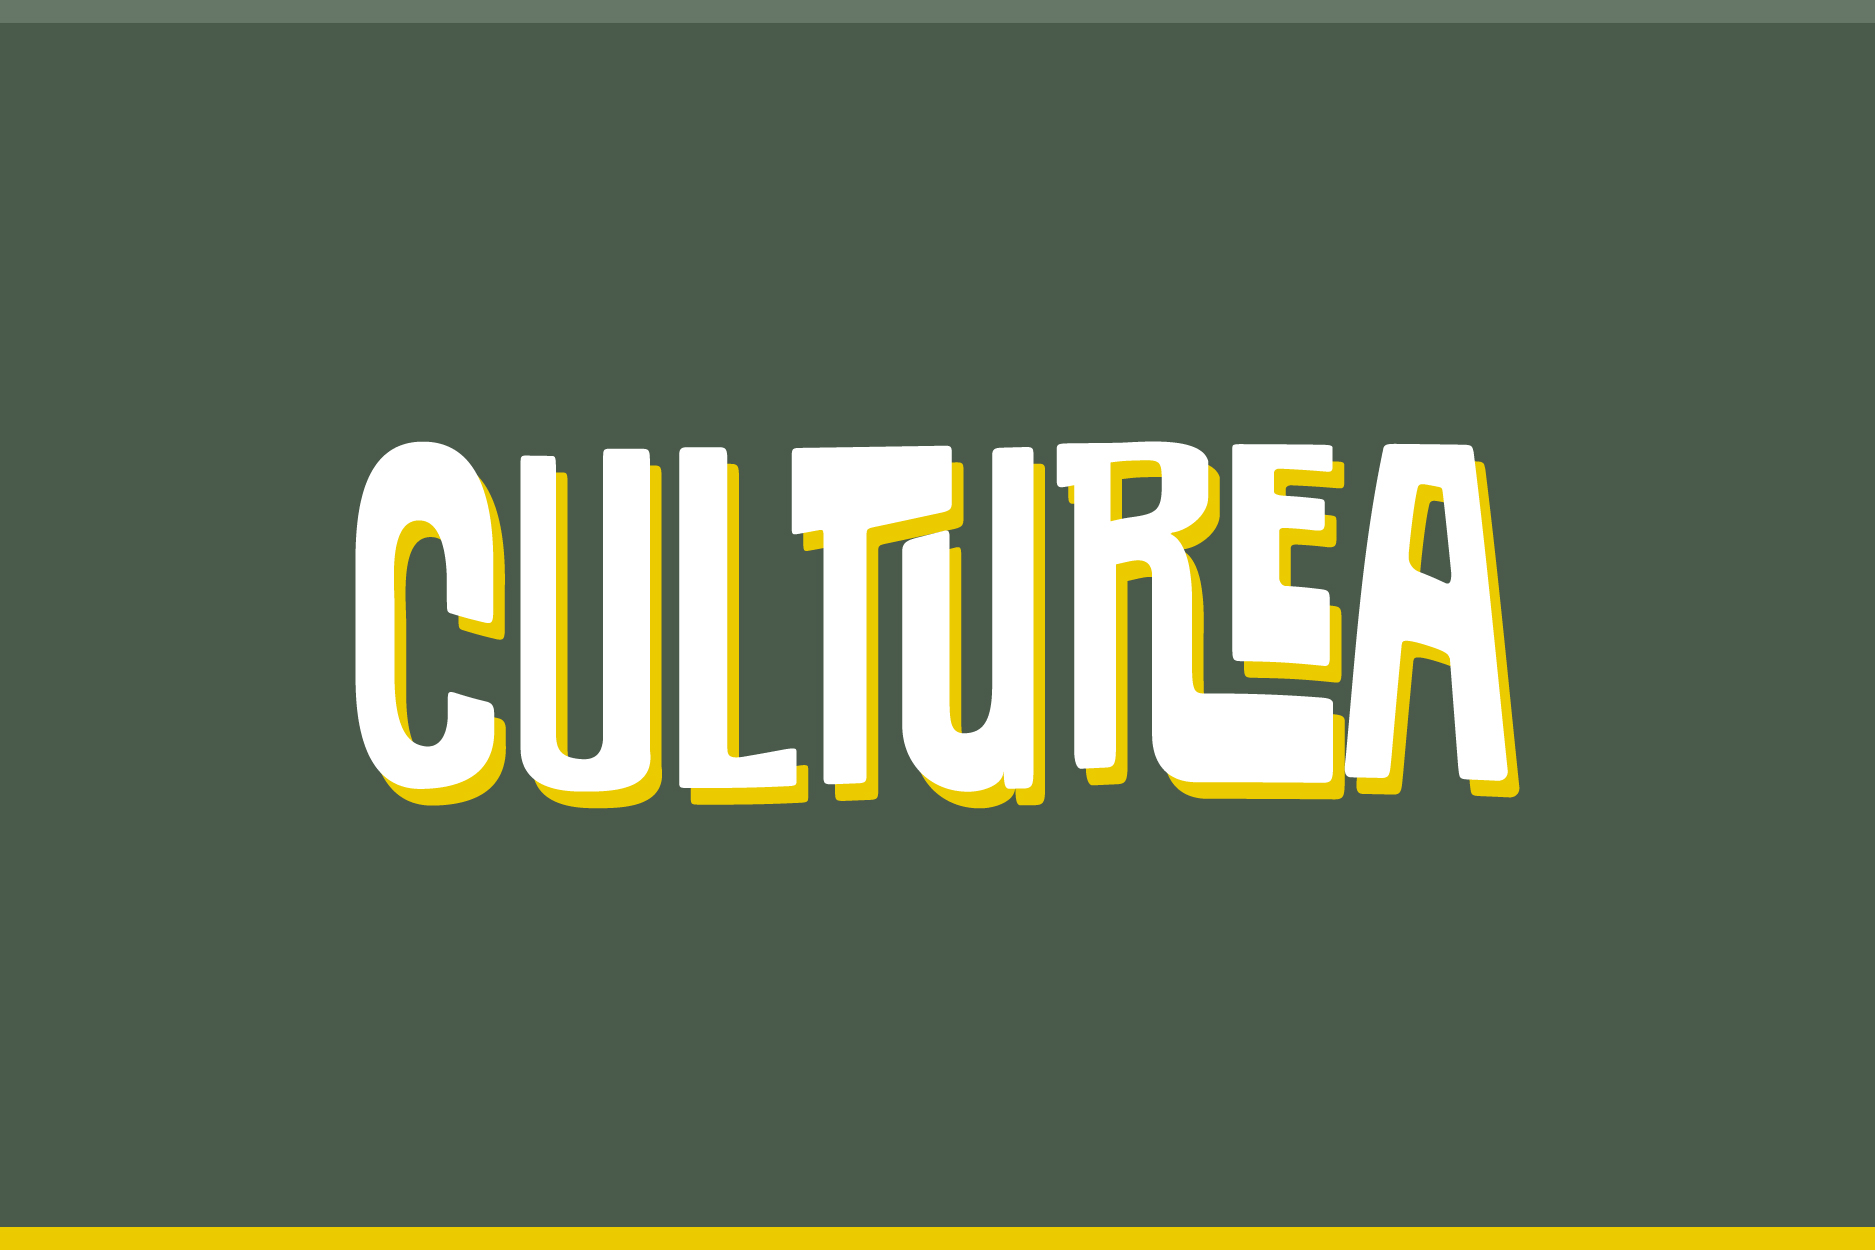 Imaxe de Culturea